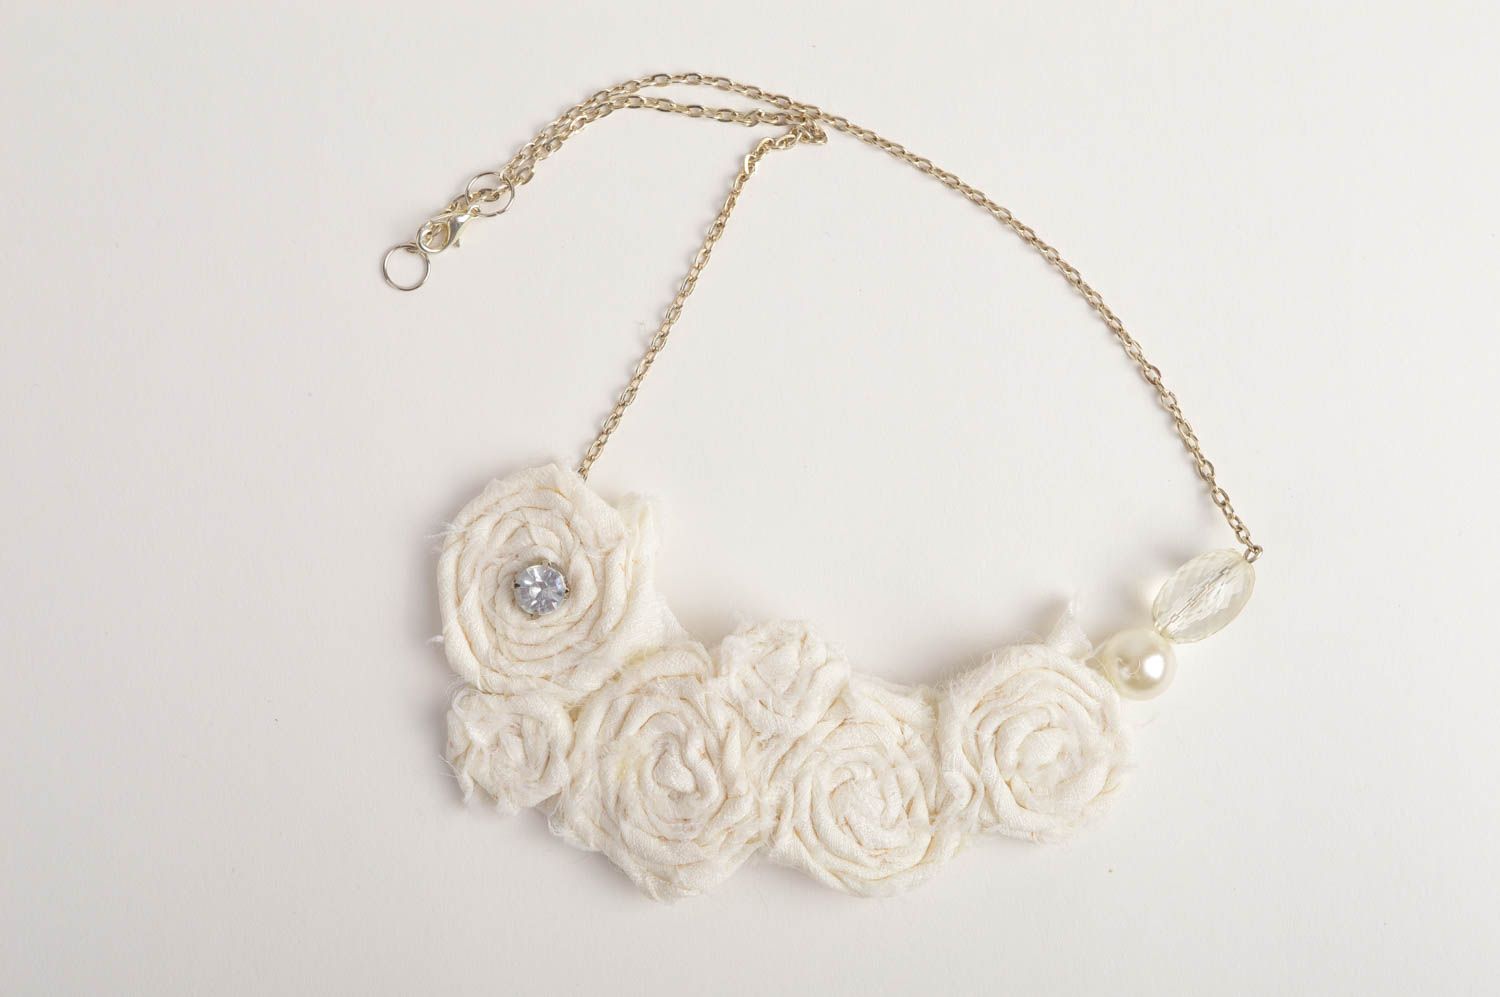 Handmade beaded necklace stylish elegant necklace fabric festive jewelry photo 4